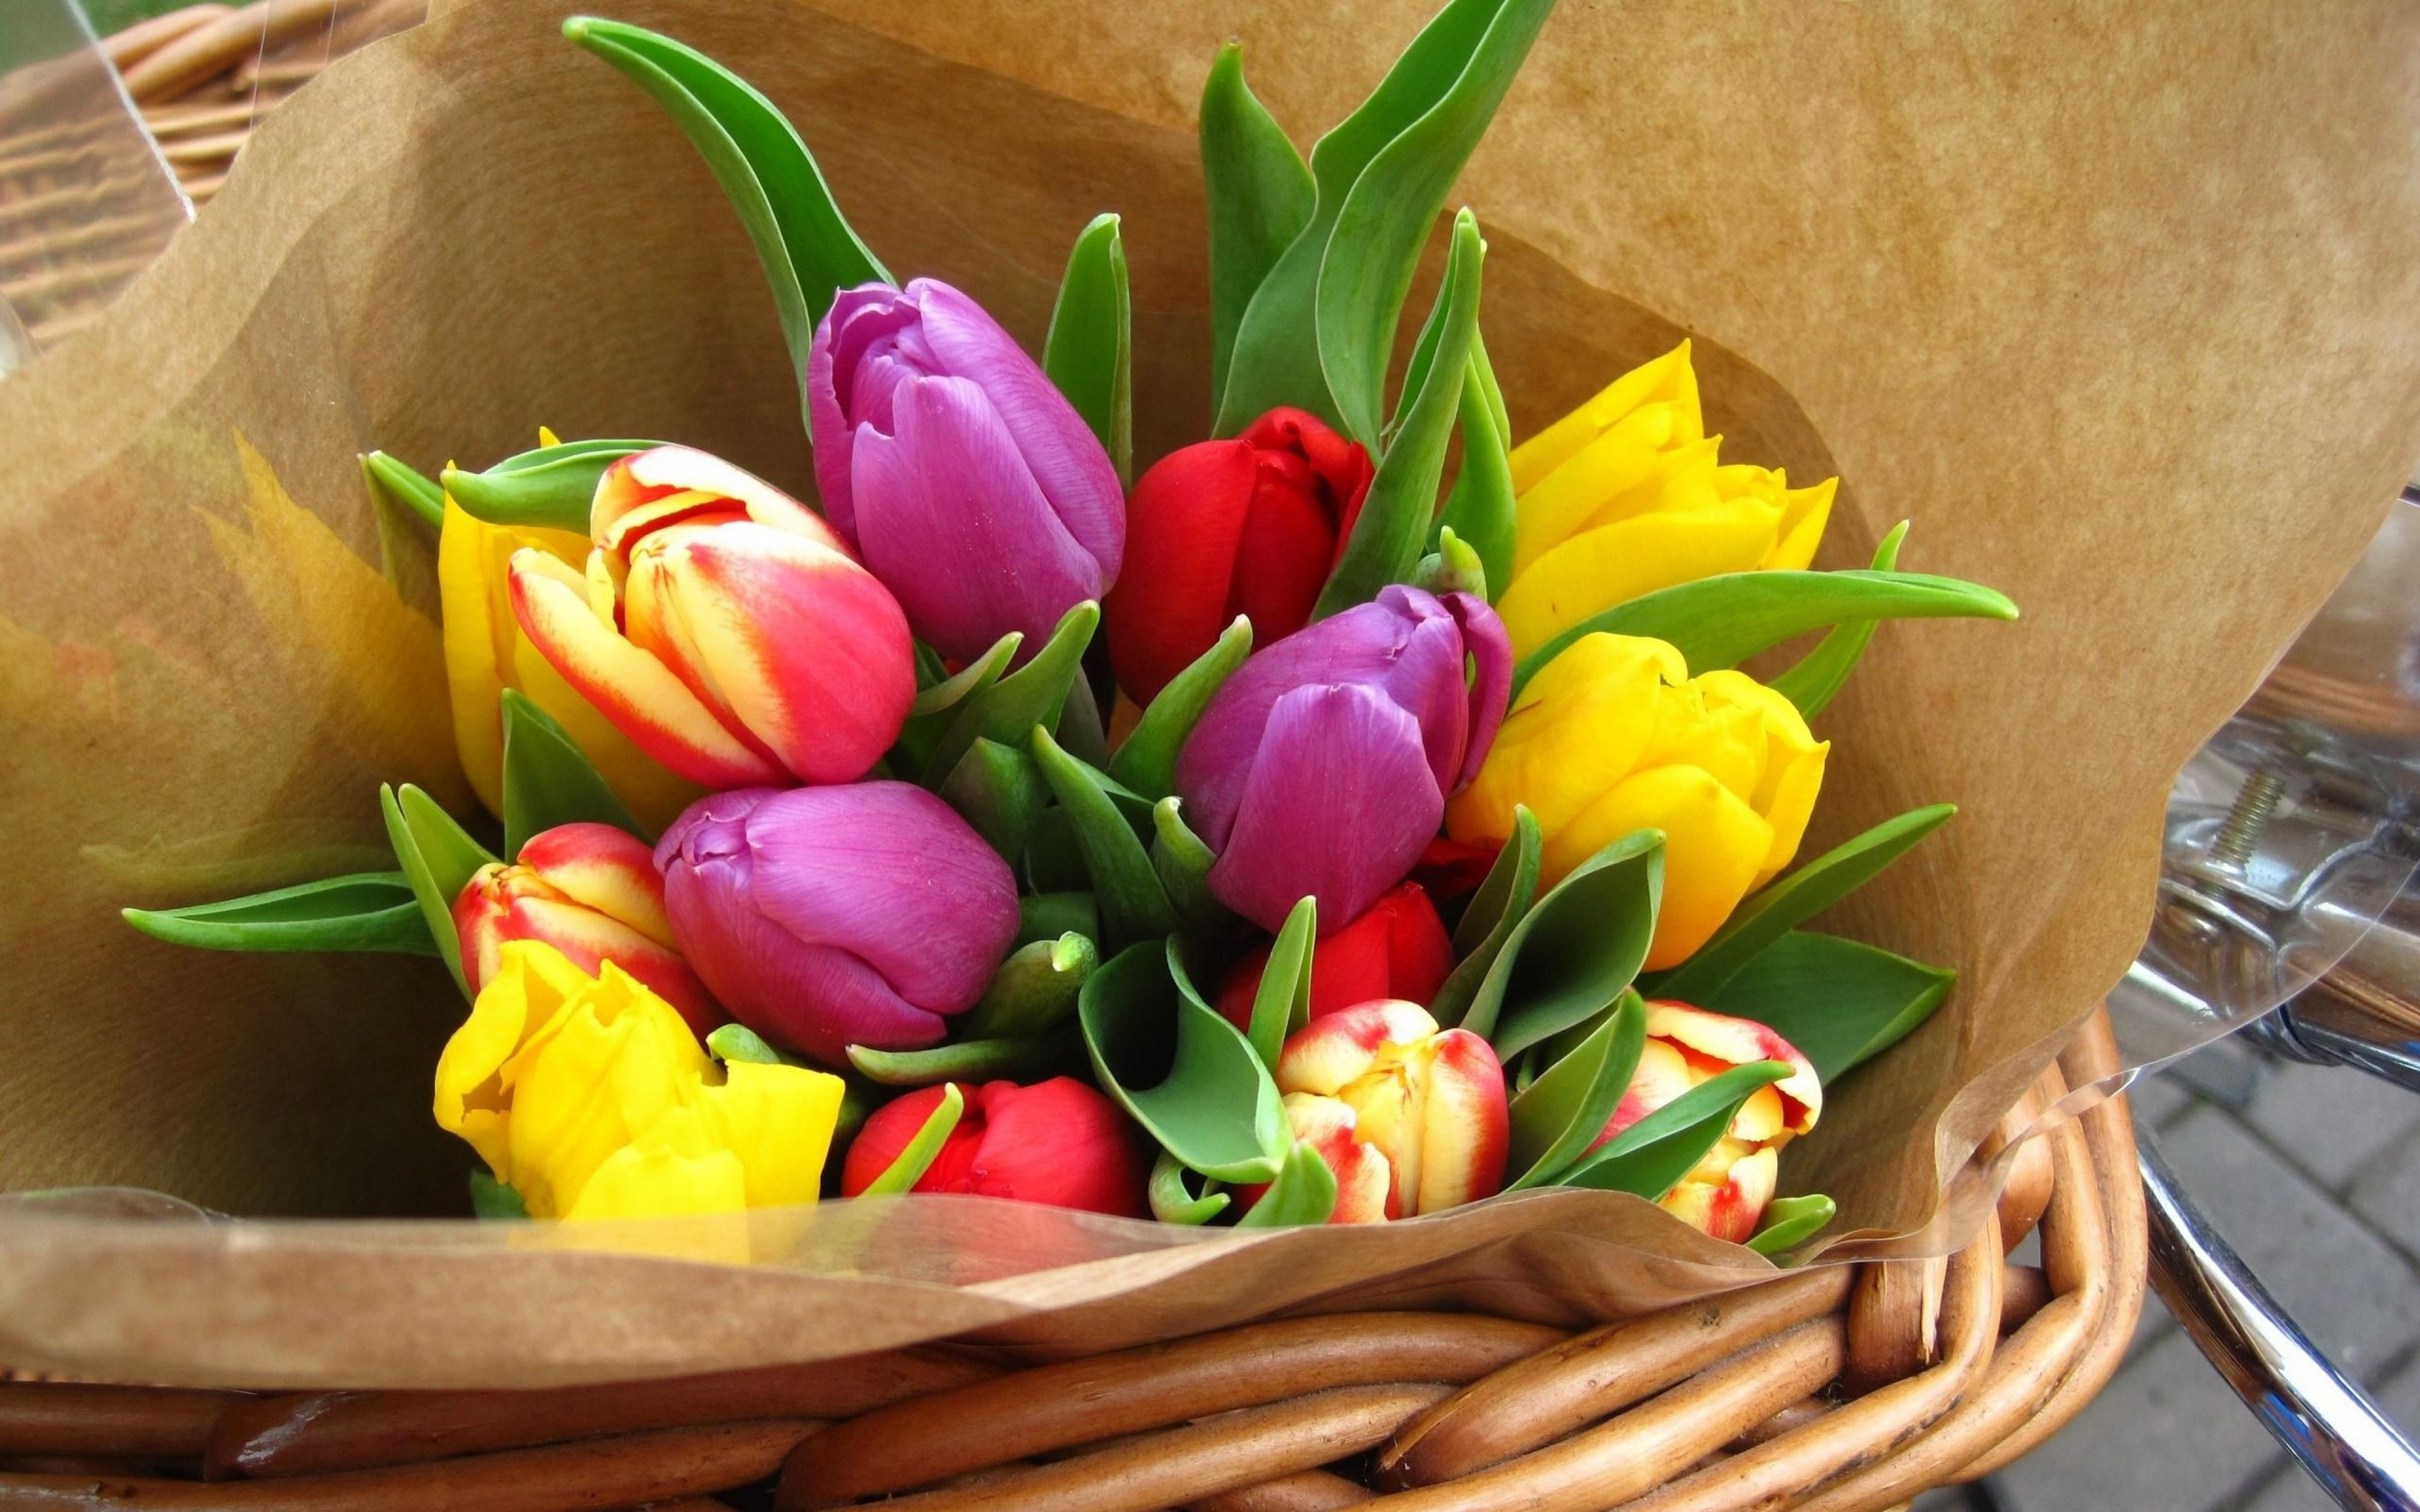 Giải thích giấc mơ: hoa tulip - tại sao lại mơ